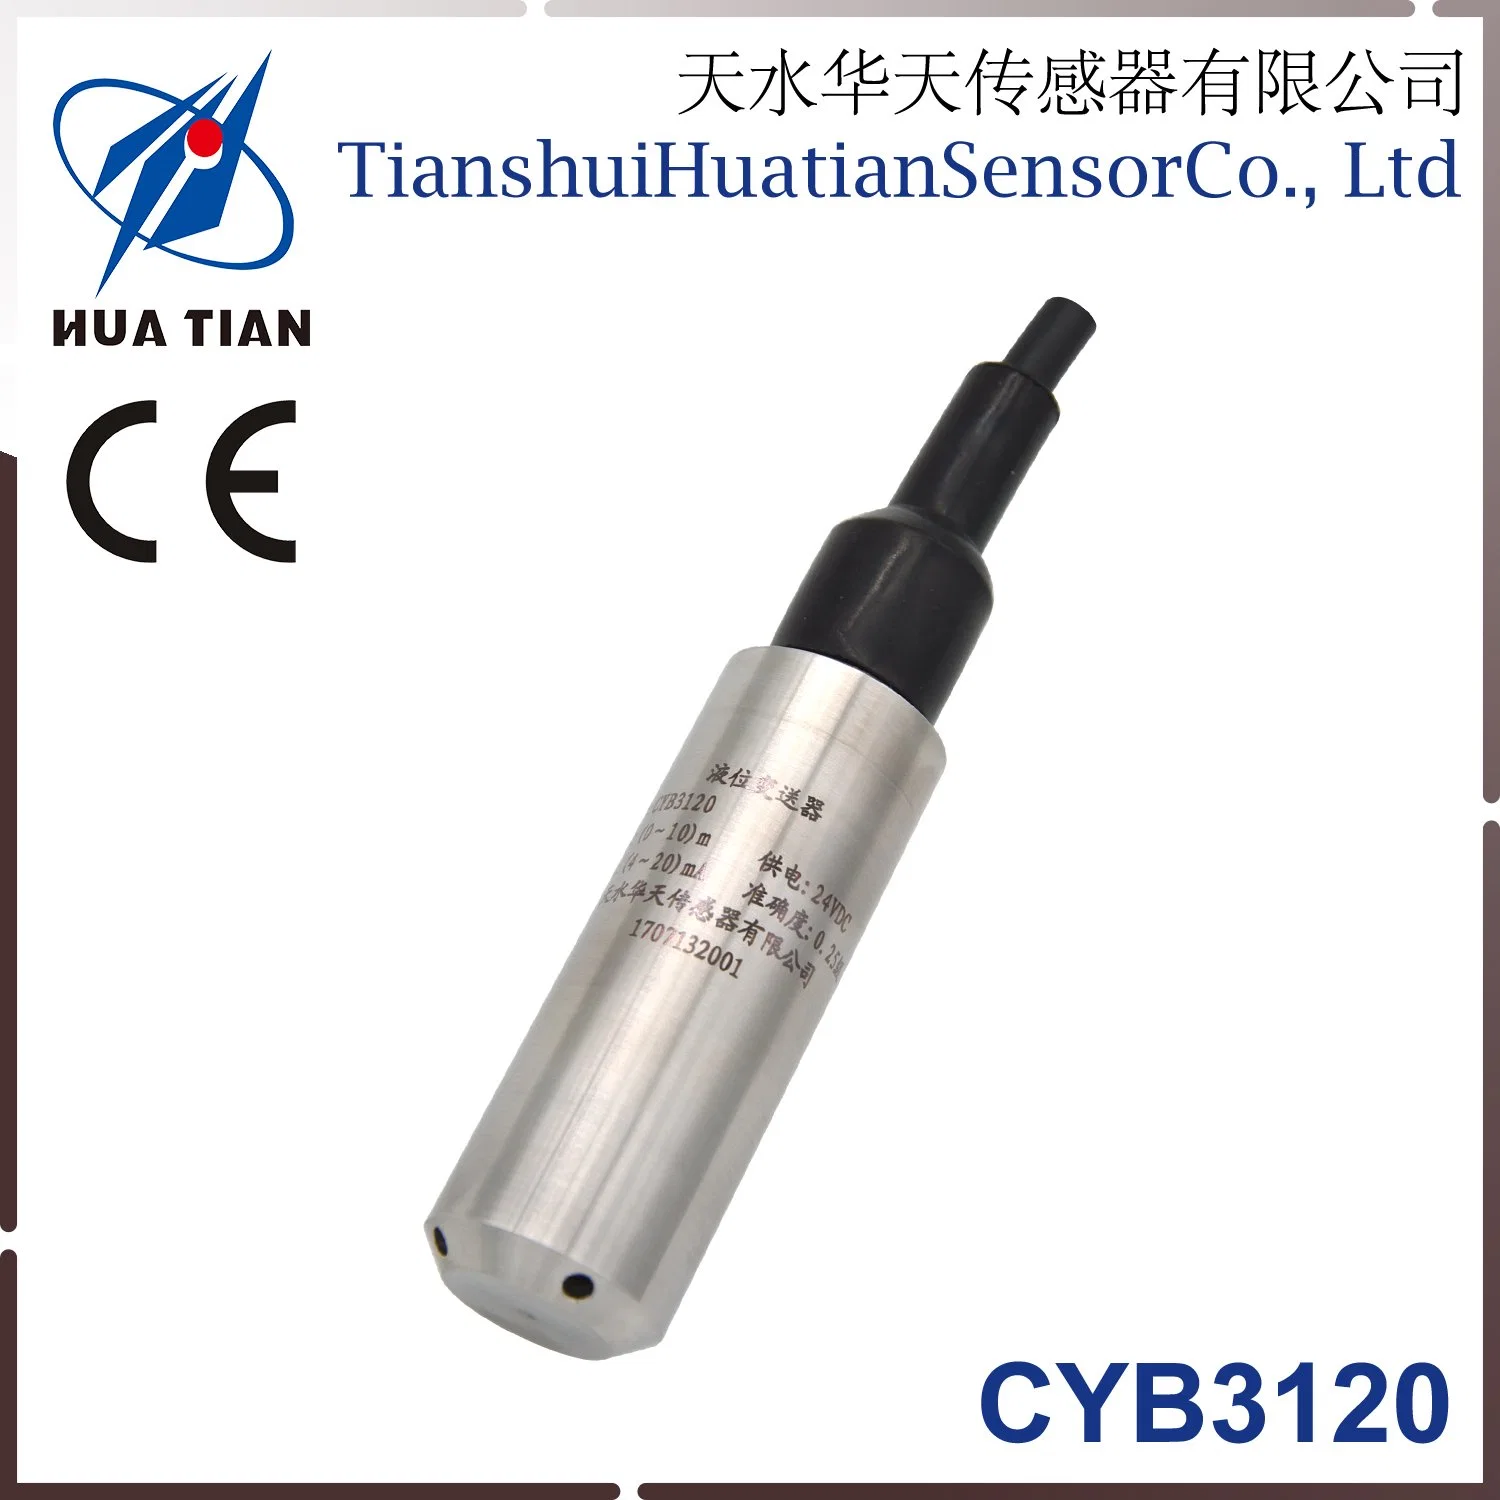 CE Approved Input Type Huatian Tianshui Ultrasonic Sensor Level Transmitter Cyb3120